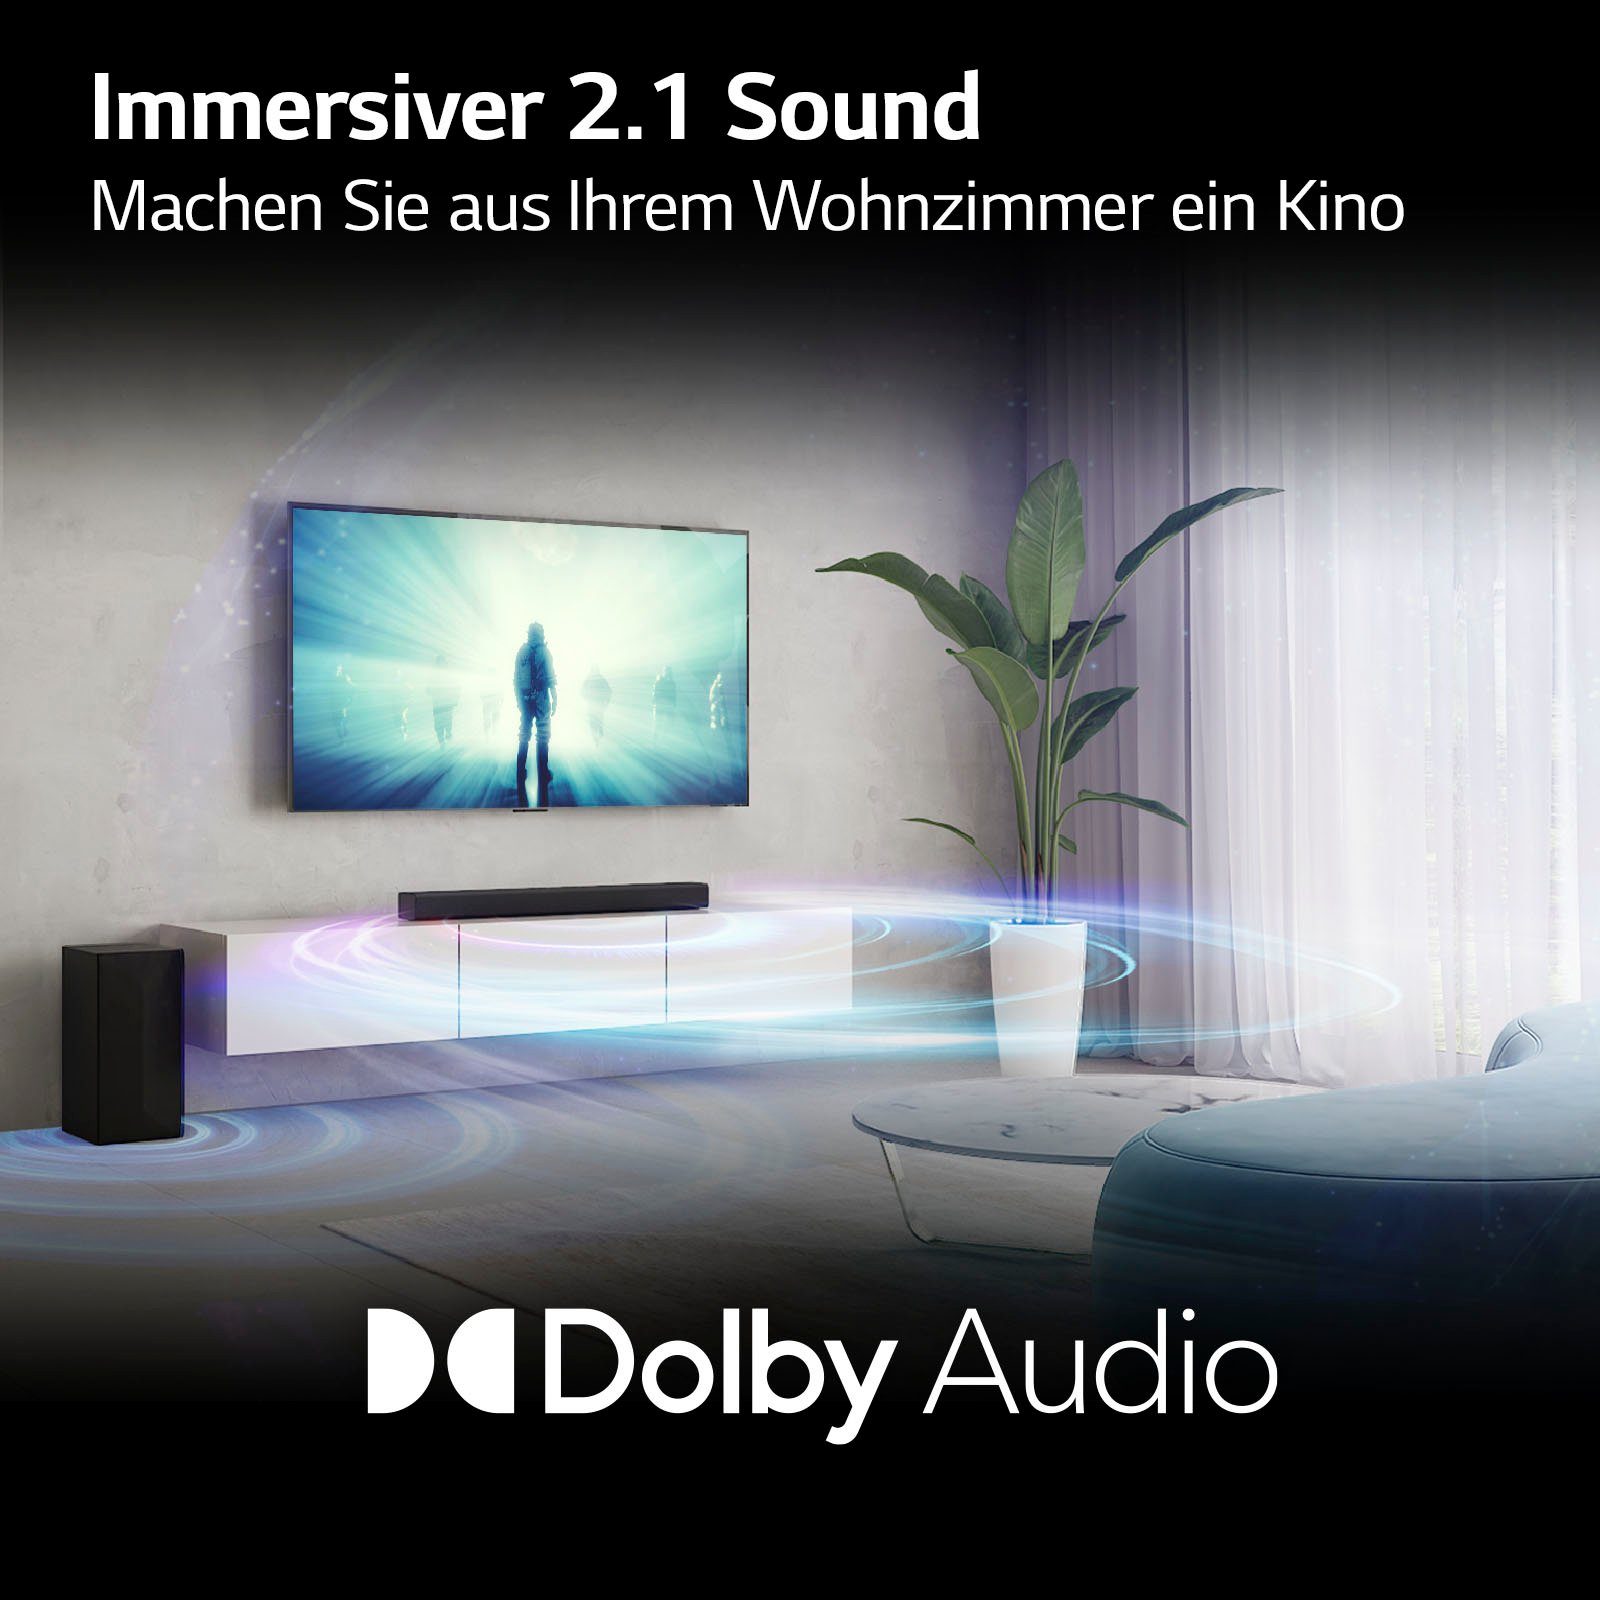 AI Audio,TV Share,kabelloser DS40Q Soundmode Res (Bluetooth, LG Subwoofer) Pro,Hi 2.1 Soundbar 300 W, Sound